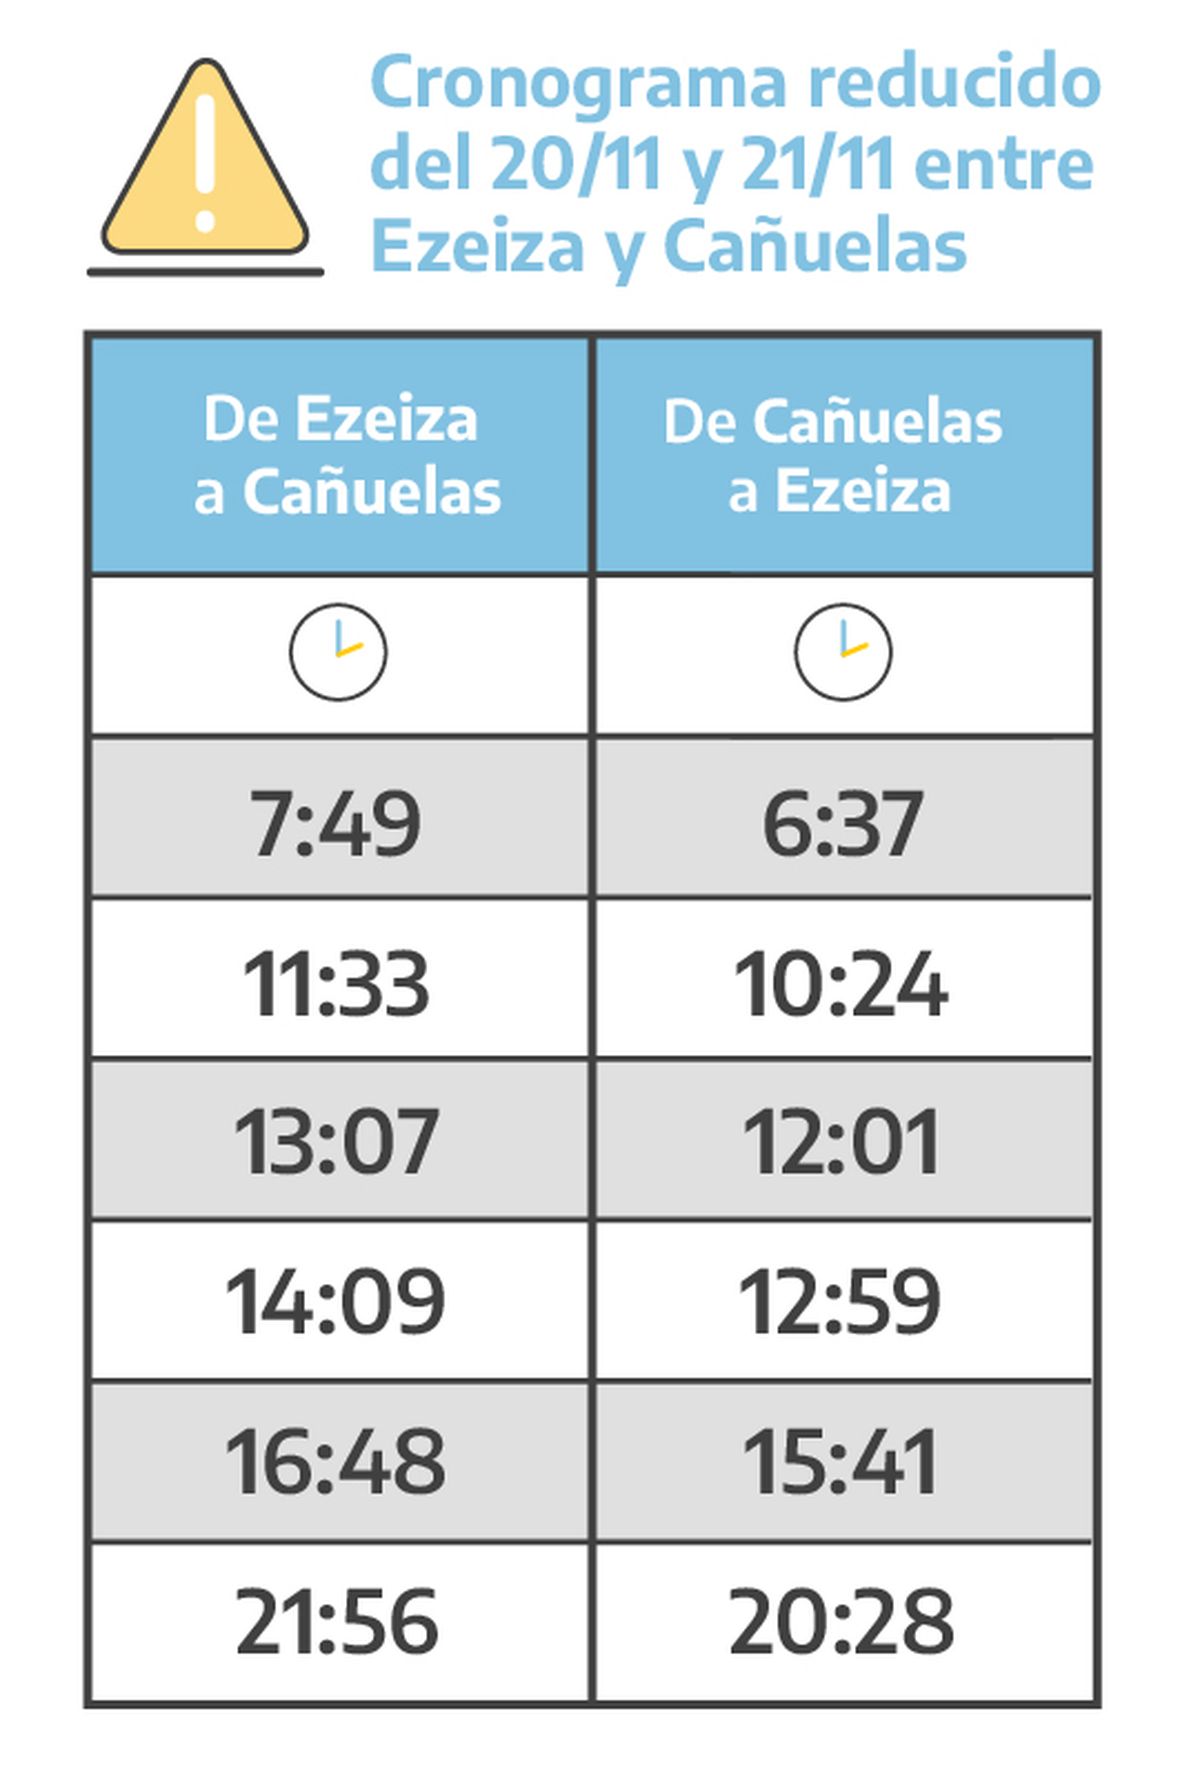 El horario del servicio entre Ezeiza y Cañuelas este domingo y lunes.